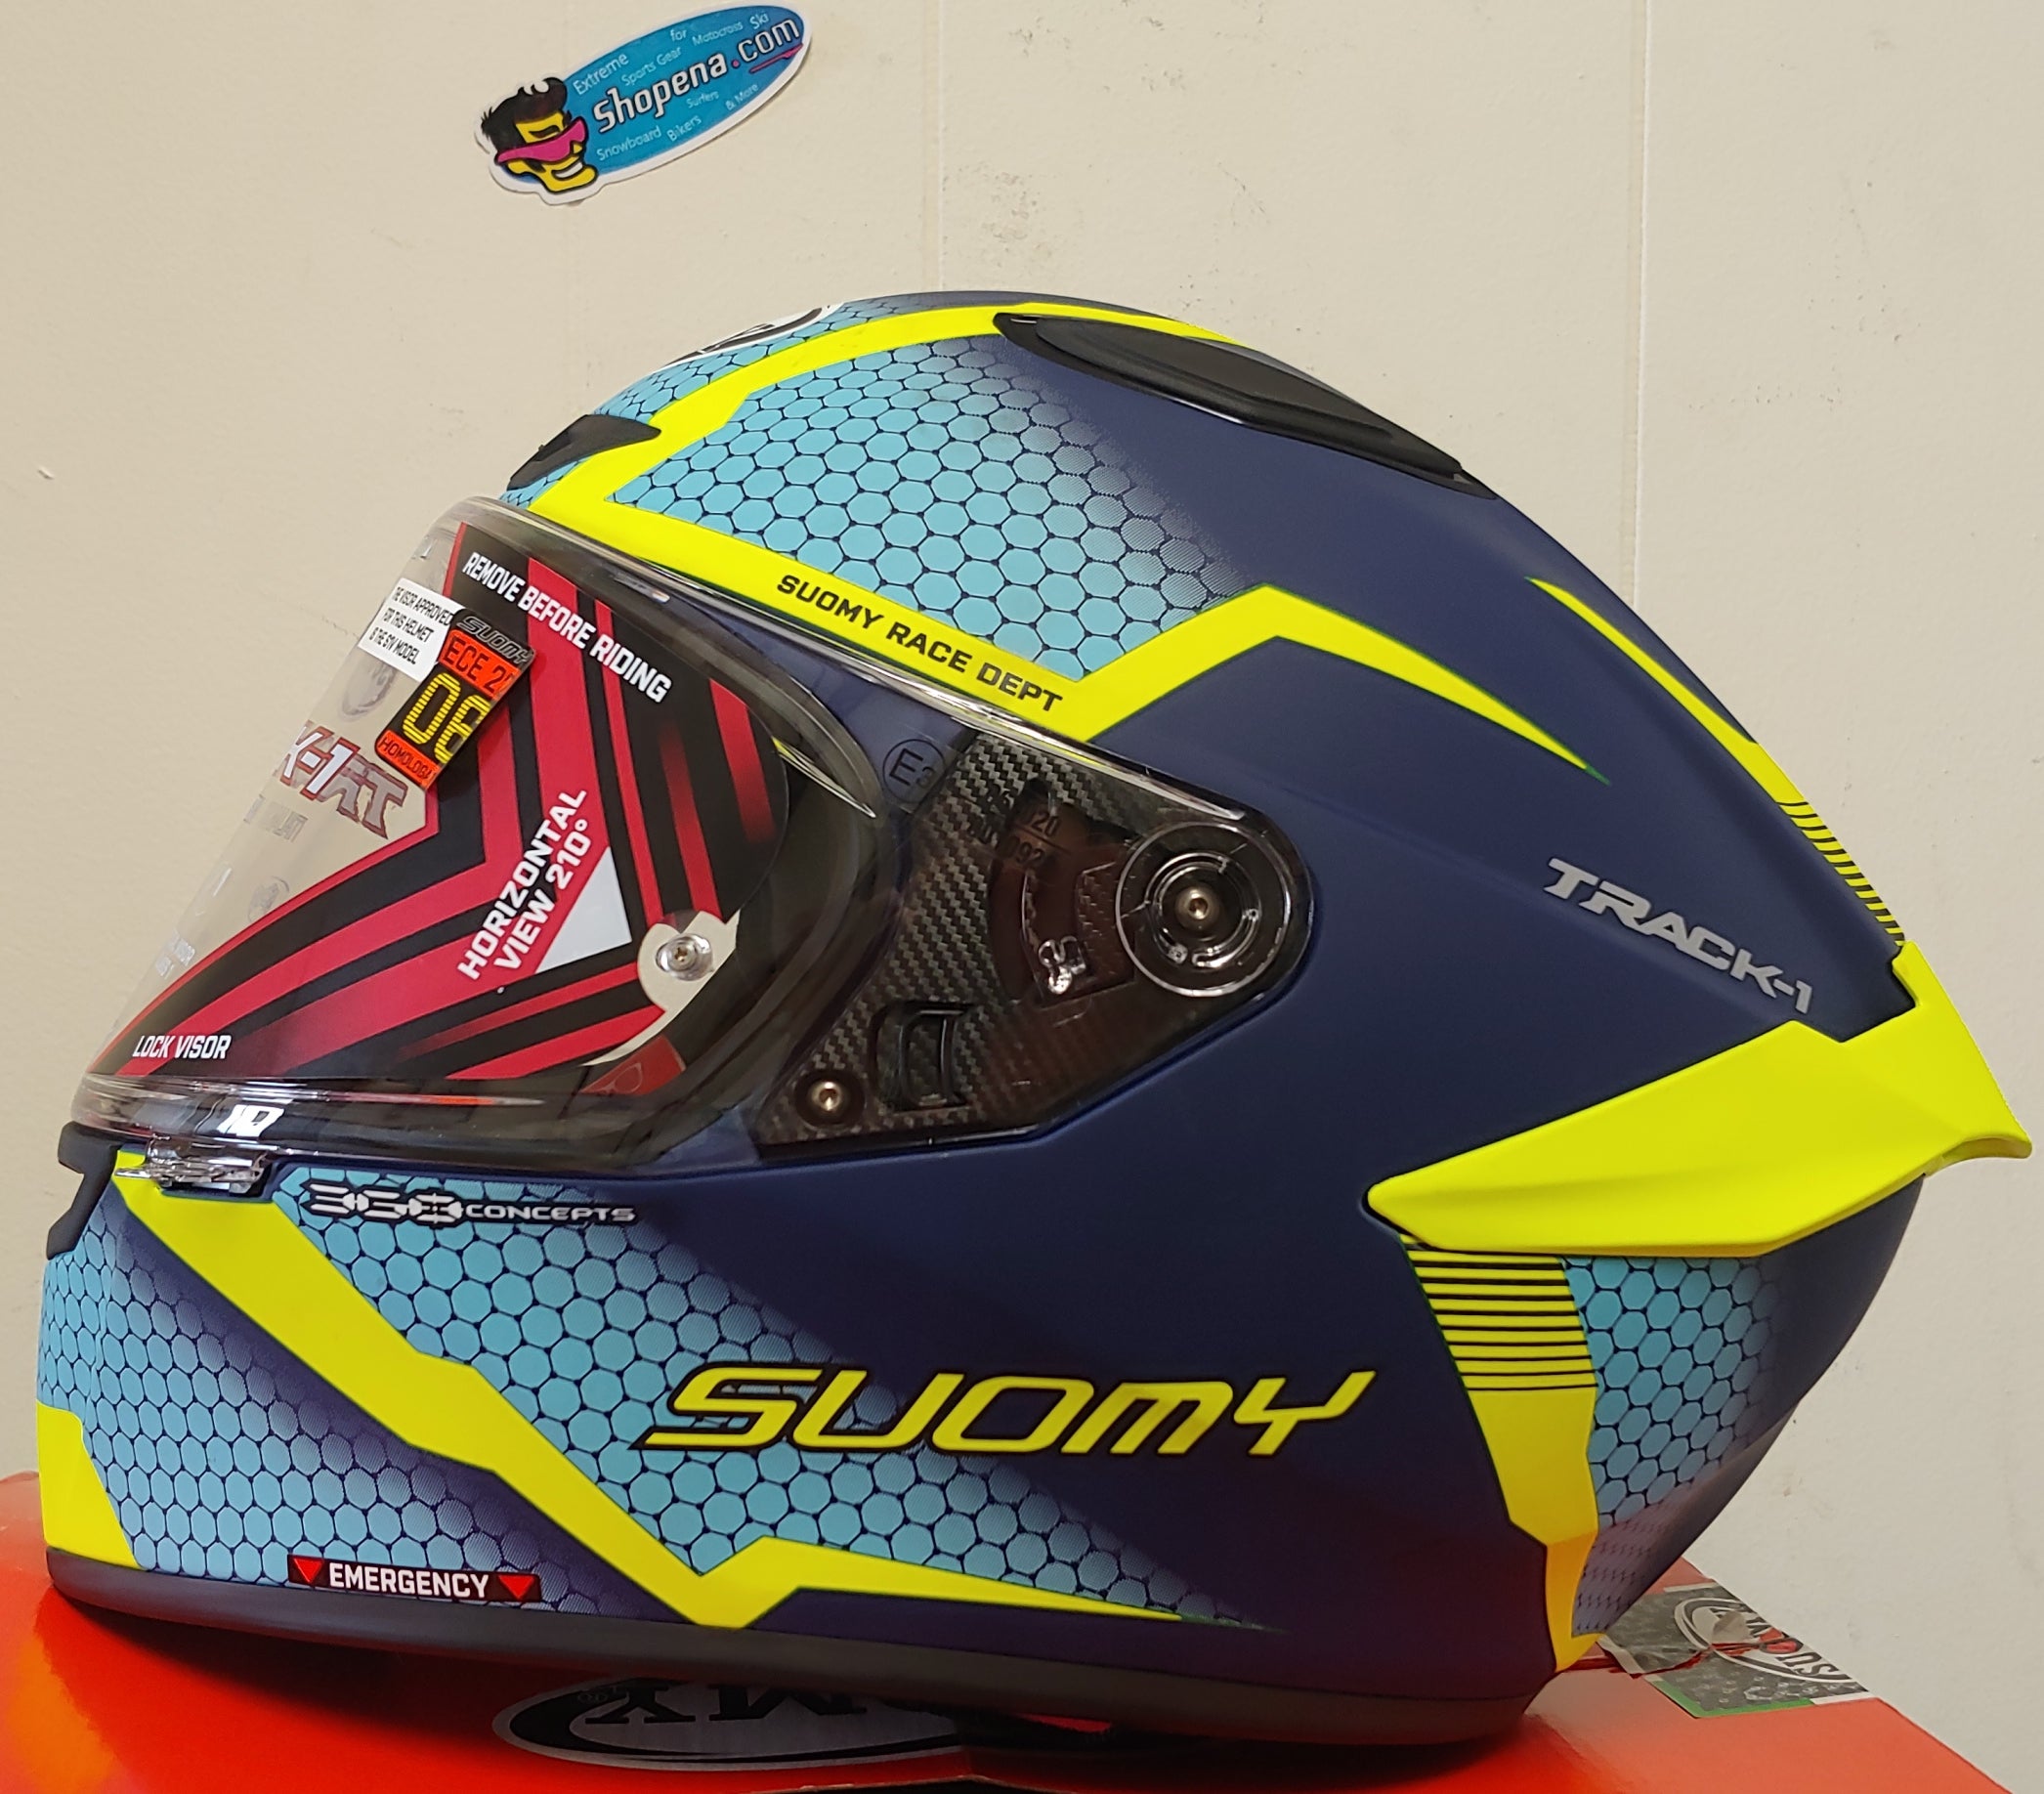 Suomy Track-1 Reaction Helmet